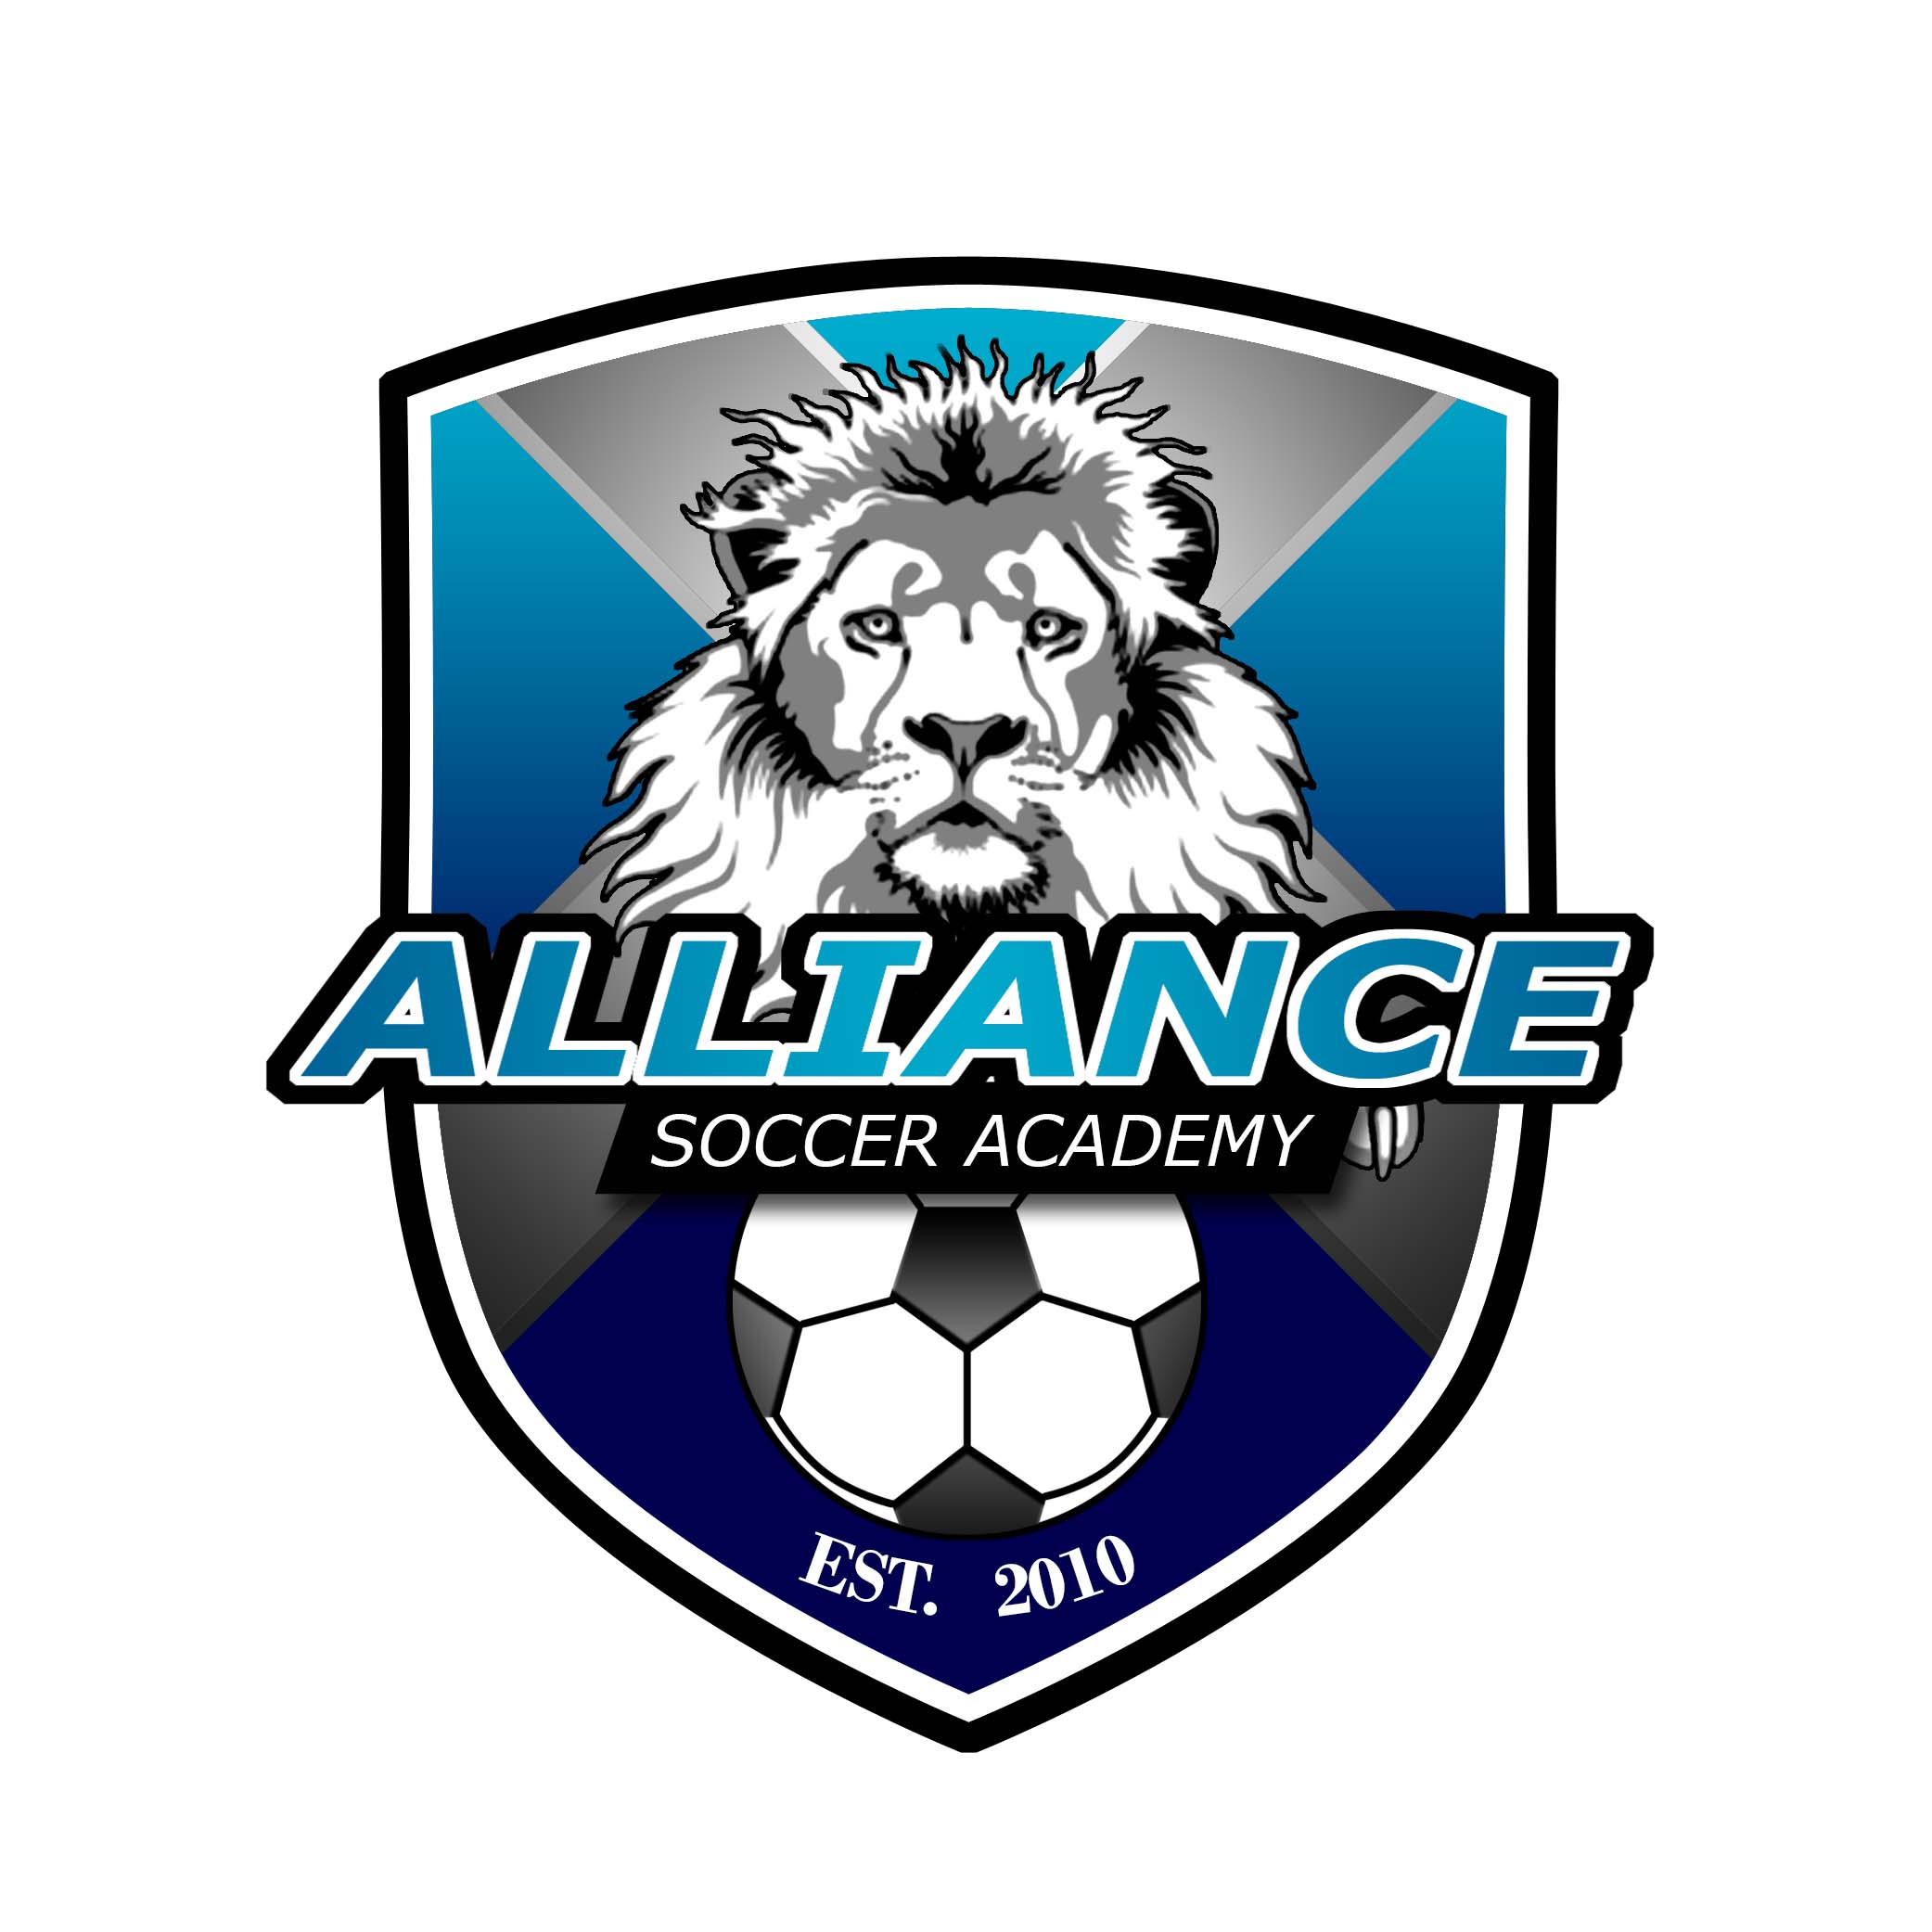 Alliance Soccer Academy team badge